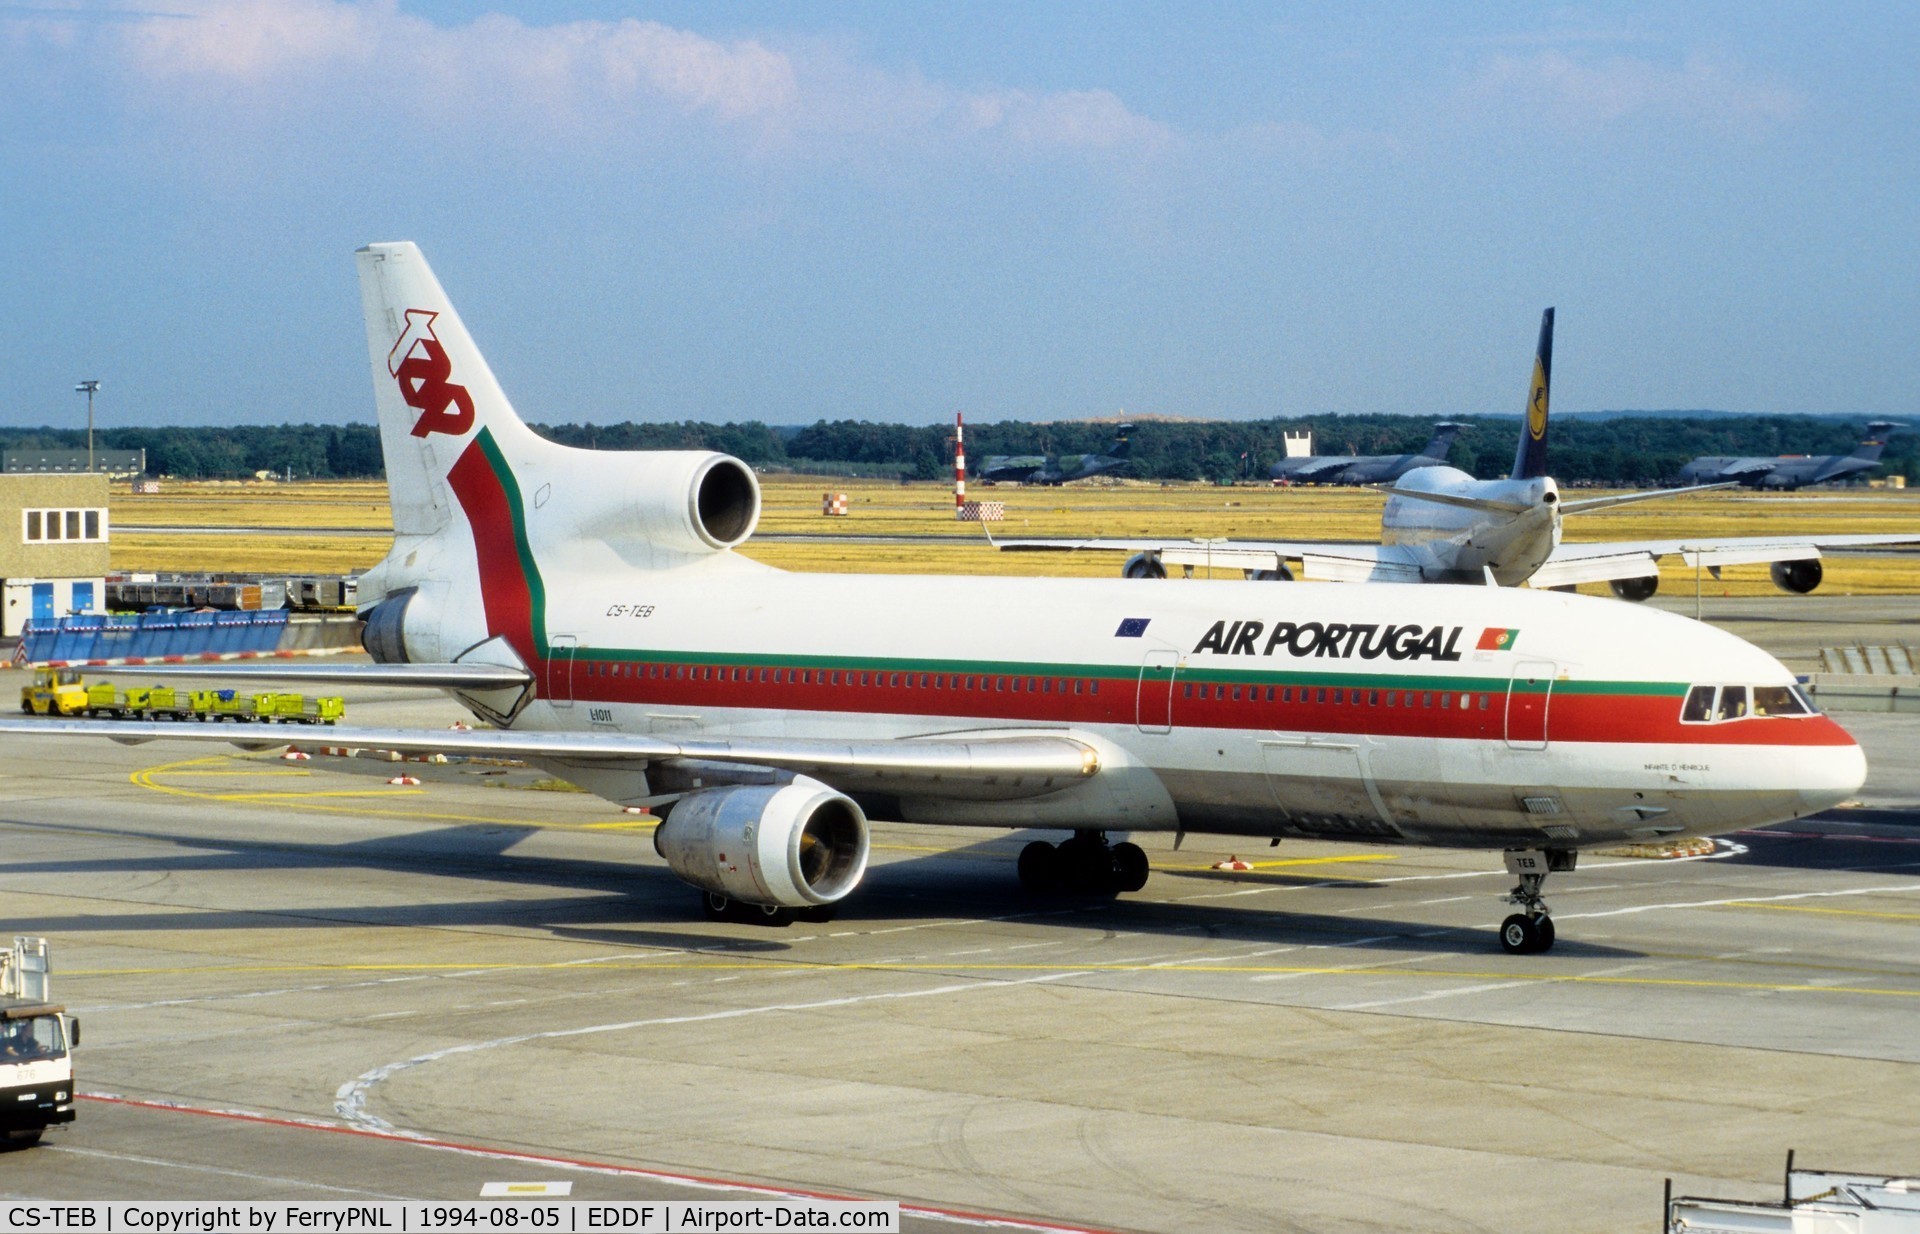 CS-TEB, 1983 Lockheed L-1011-500 TriStar C/N 1240, TAP L1015 taxying out